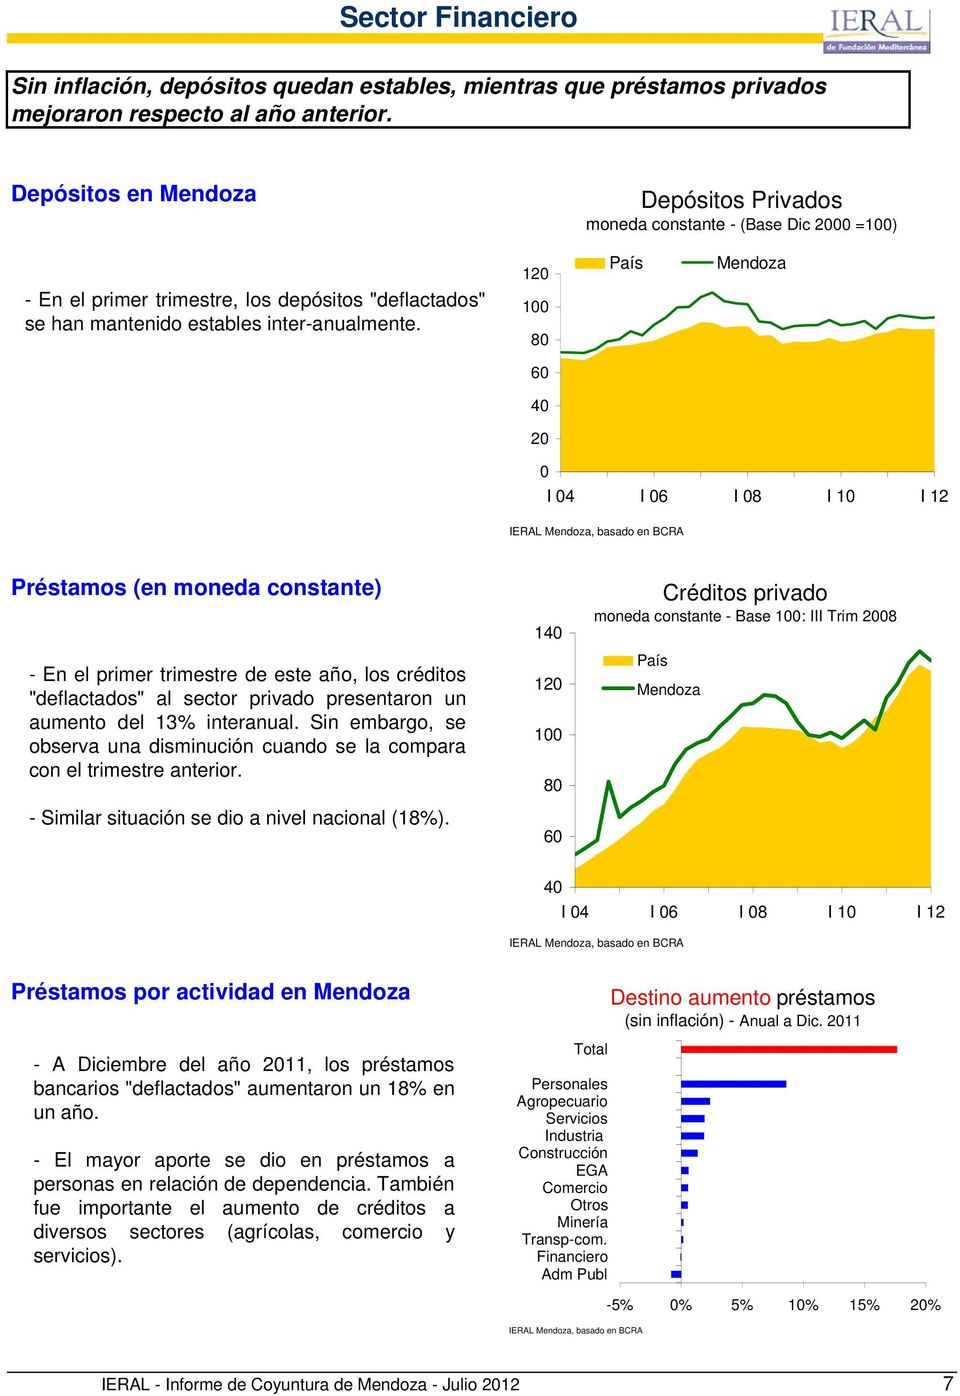 12 1 8 6 4 2 País Mendoza I 4 I 6 I 8 I 1 I 12 IERAL Mendoza, basado en BCRA Préstamos (en moneda constante) - En el primer trimestre de este año, los créditos "deflactados" al sector privado